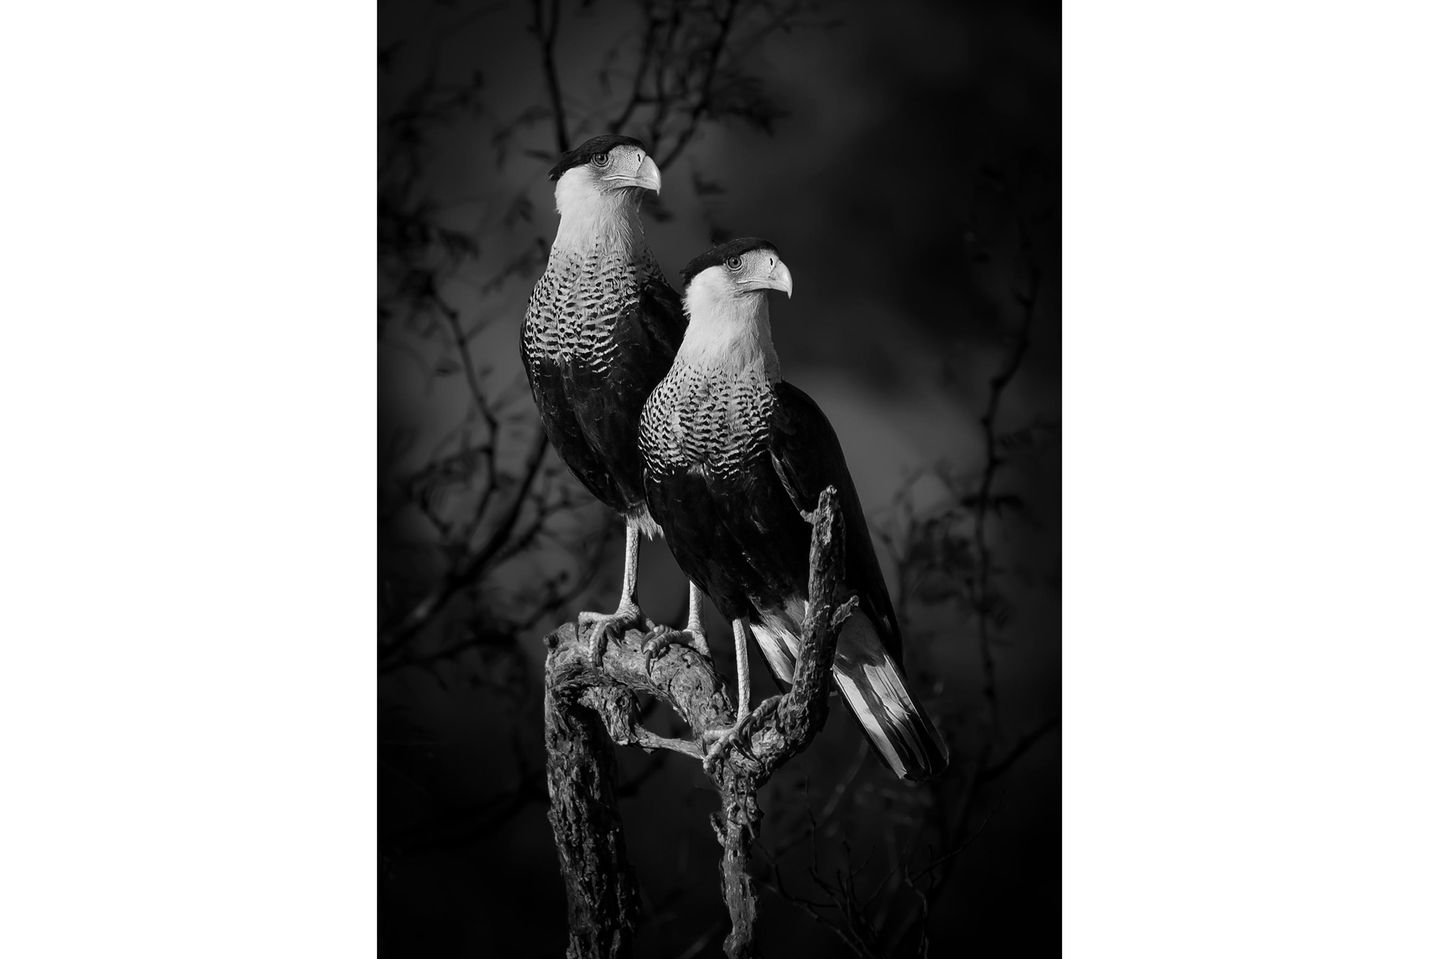 Das Gewinnerbild in der Kategorie "Natur und Tiere": Schopfkarakara (Caracara plancus) sind falkenartige Vögel aus dem mittleren und südlichen Südamerika. Dieses imposante Paar fotografierte Dinorah Graue Obscura im südlichen Texas